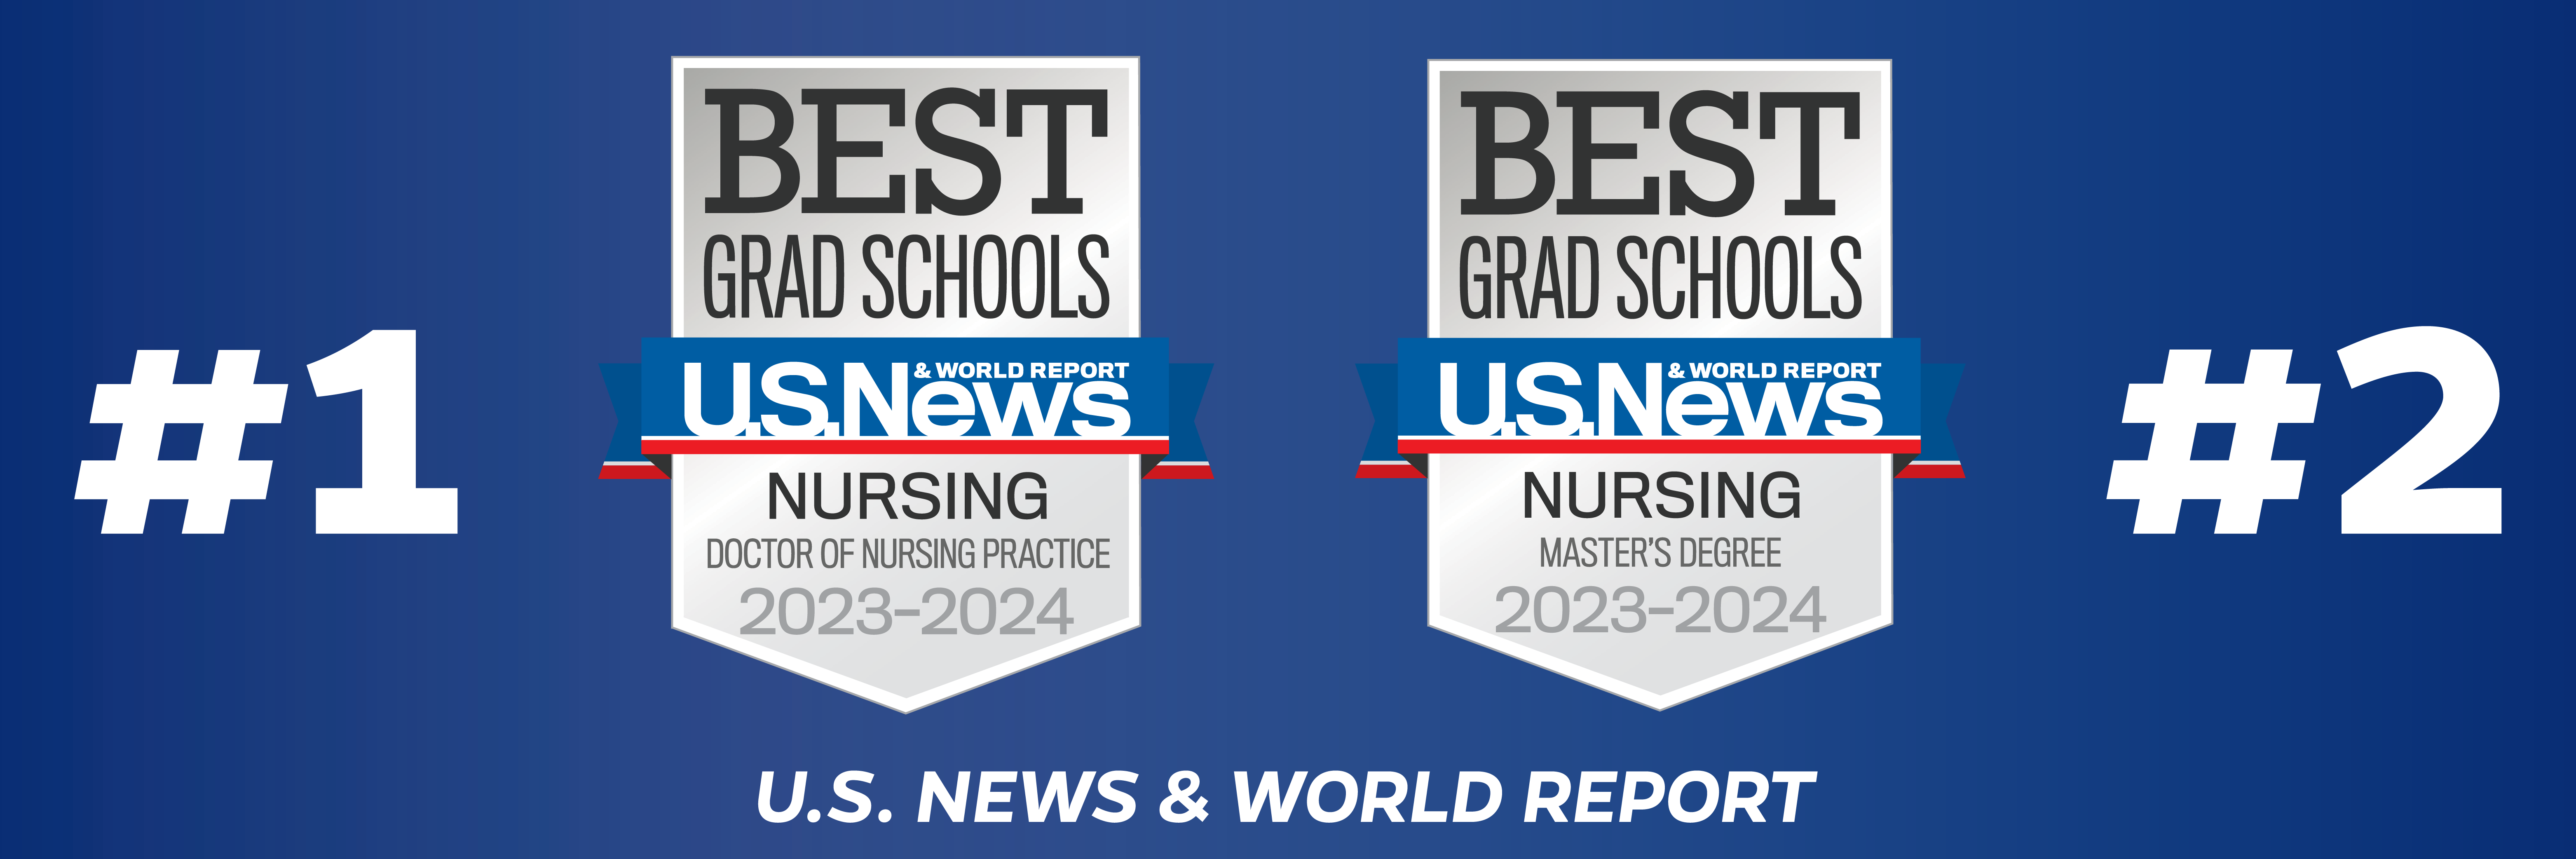 Johns Hopkins School of Nursing Earns Top Rankings